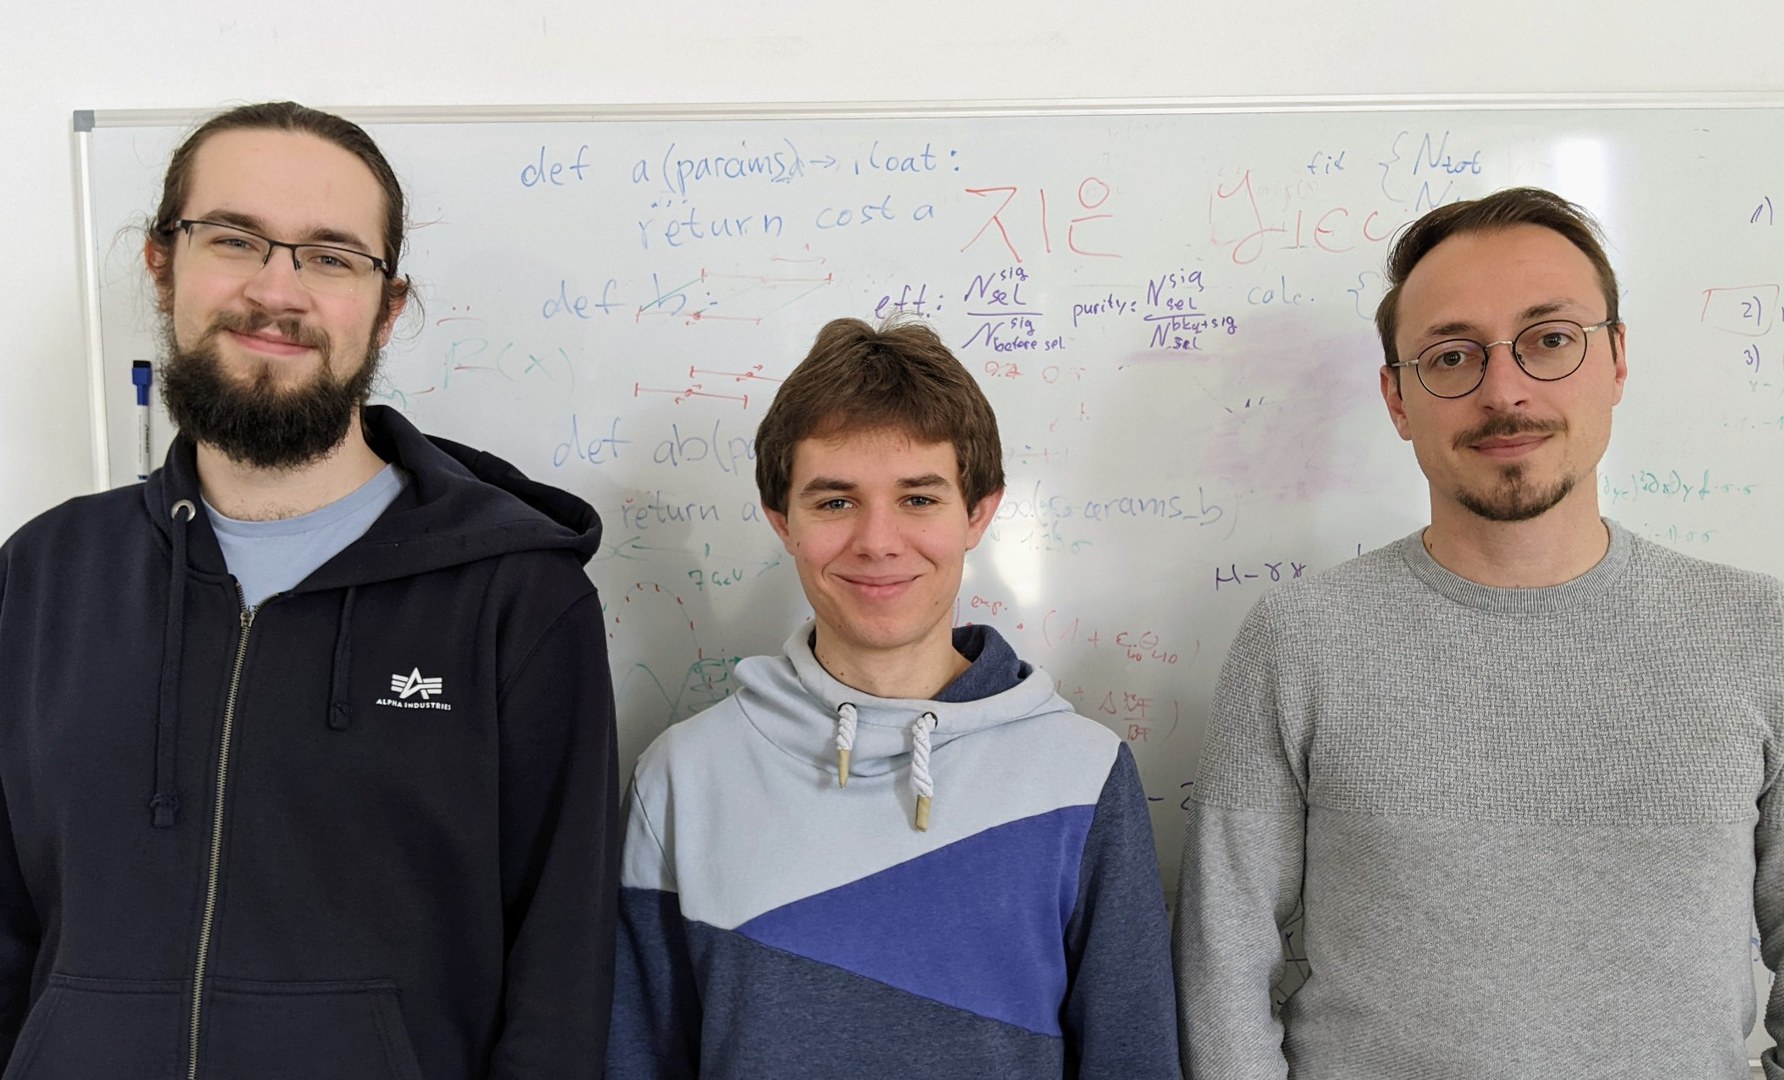 Bonner Team - das FASER Team aus Bonn, das maßgeblich bei der Entdeckung mitgewirkt hat: Tobias Blesgen (im Rahmen seiner Bacheloarbeit), Tobias Böckh (im Rahmen seiner Promotion) und Dr. Markus Prim (v.l.n.r.).